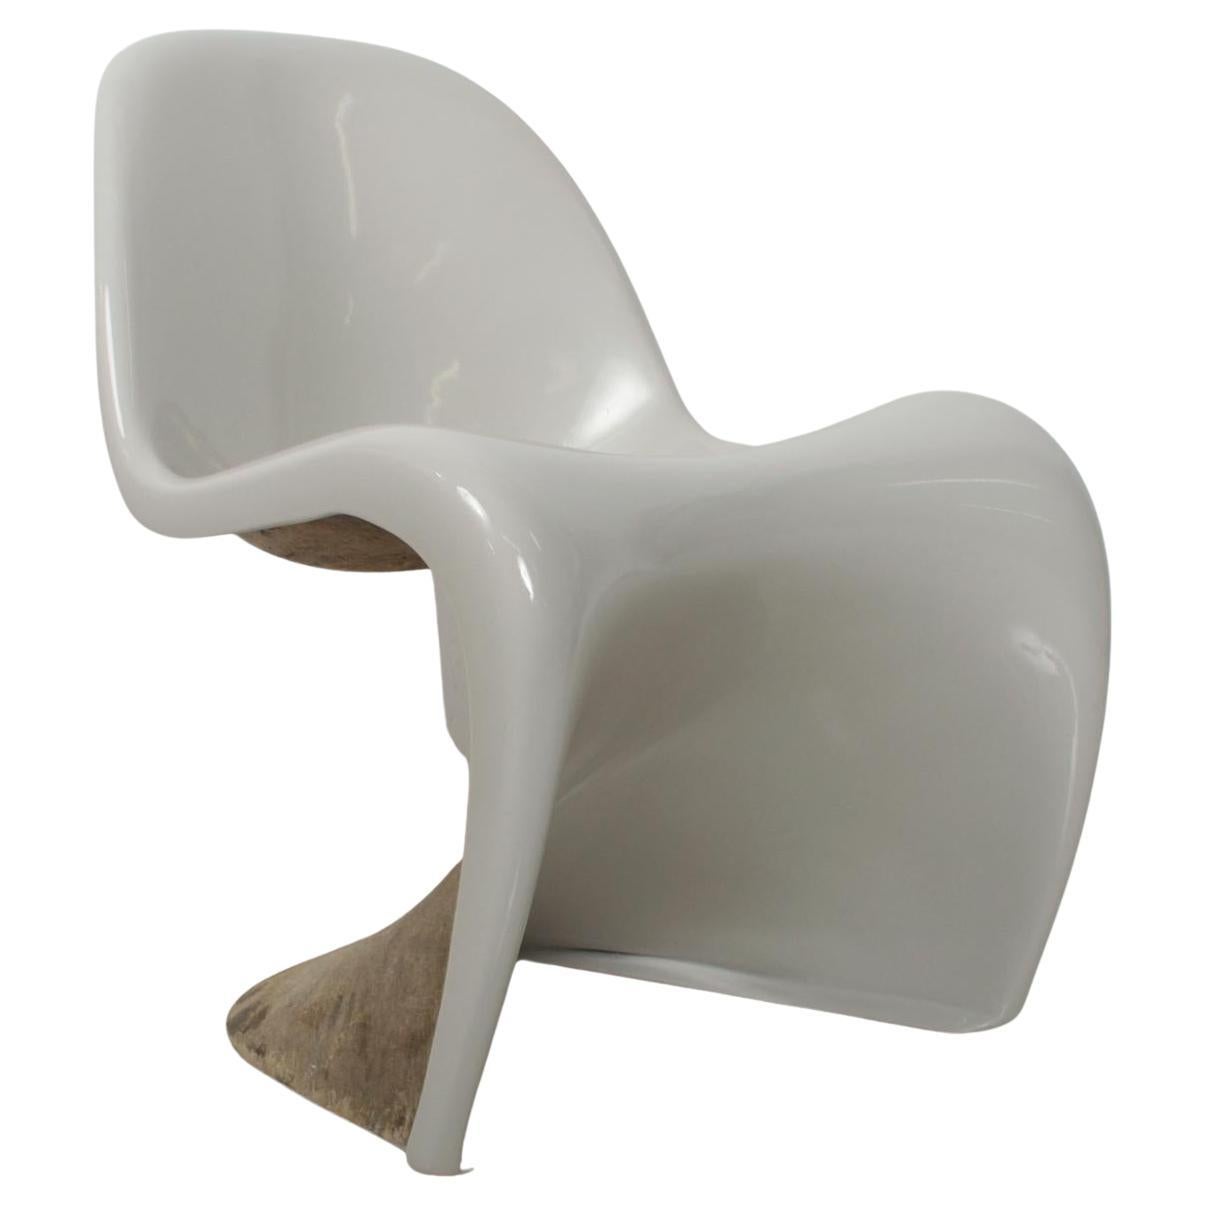 S Stuhl
Vintage Modern vom Feinsten mit dem ikonischen S-Stuhl, entworfen von Verner Panton für Herman Miller. Entworfen im Jahr 1959. Produktion 1960er Jahre. Unmarkiert.
Beachten Sie das freiliegende Fiberglas. Vintage By Abnutzung vorhanden. Der